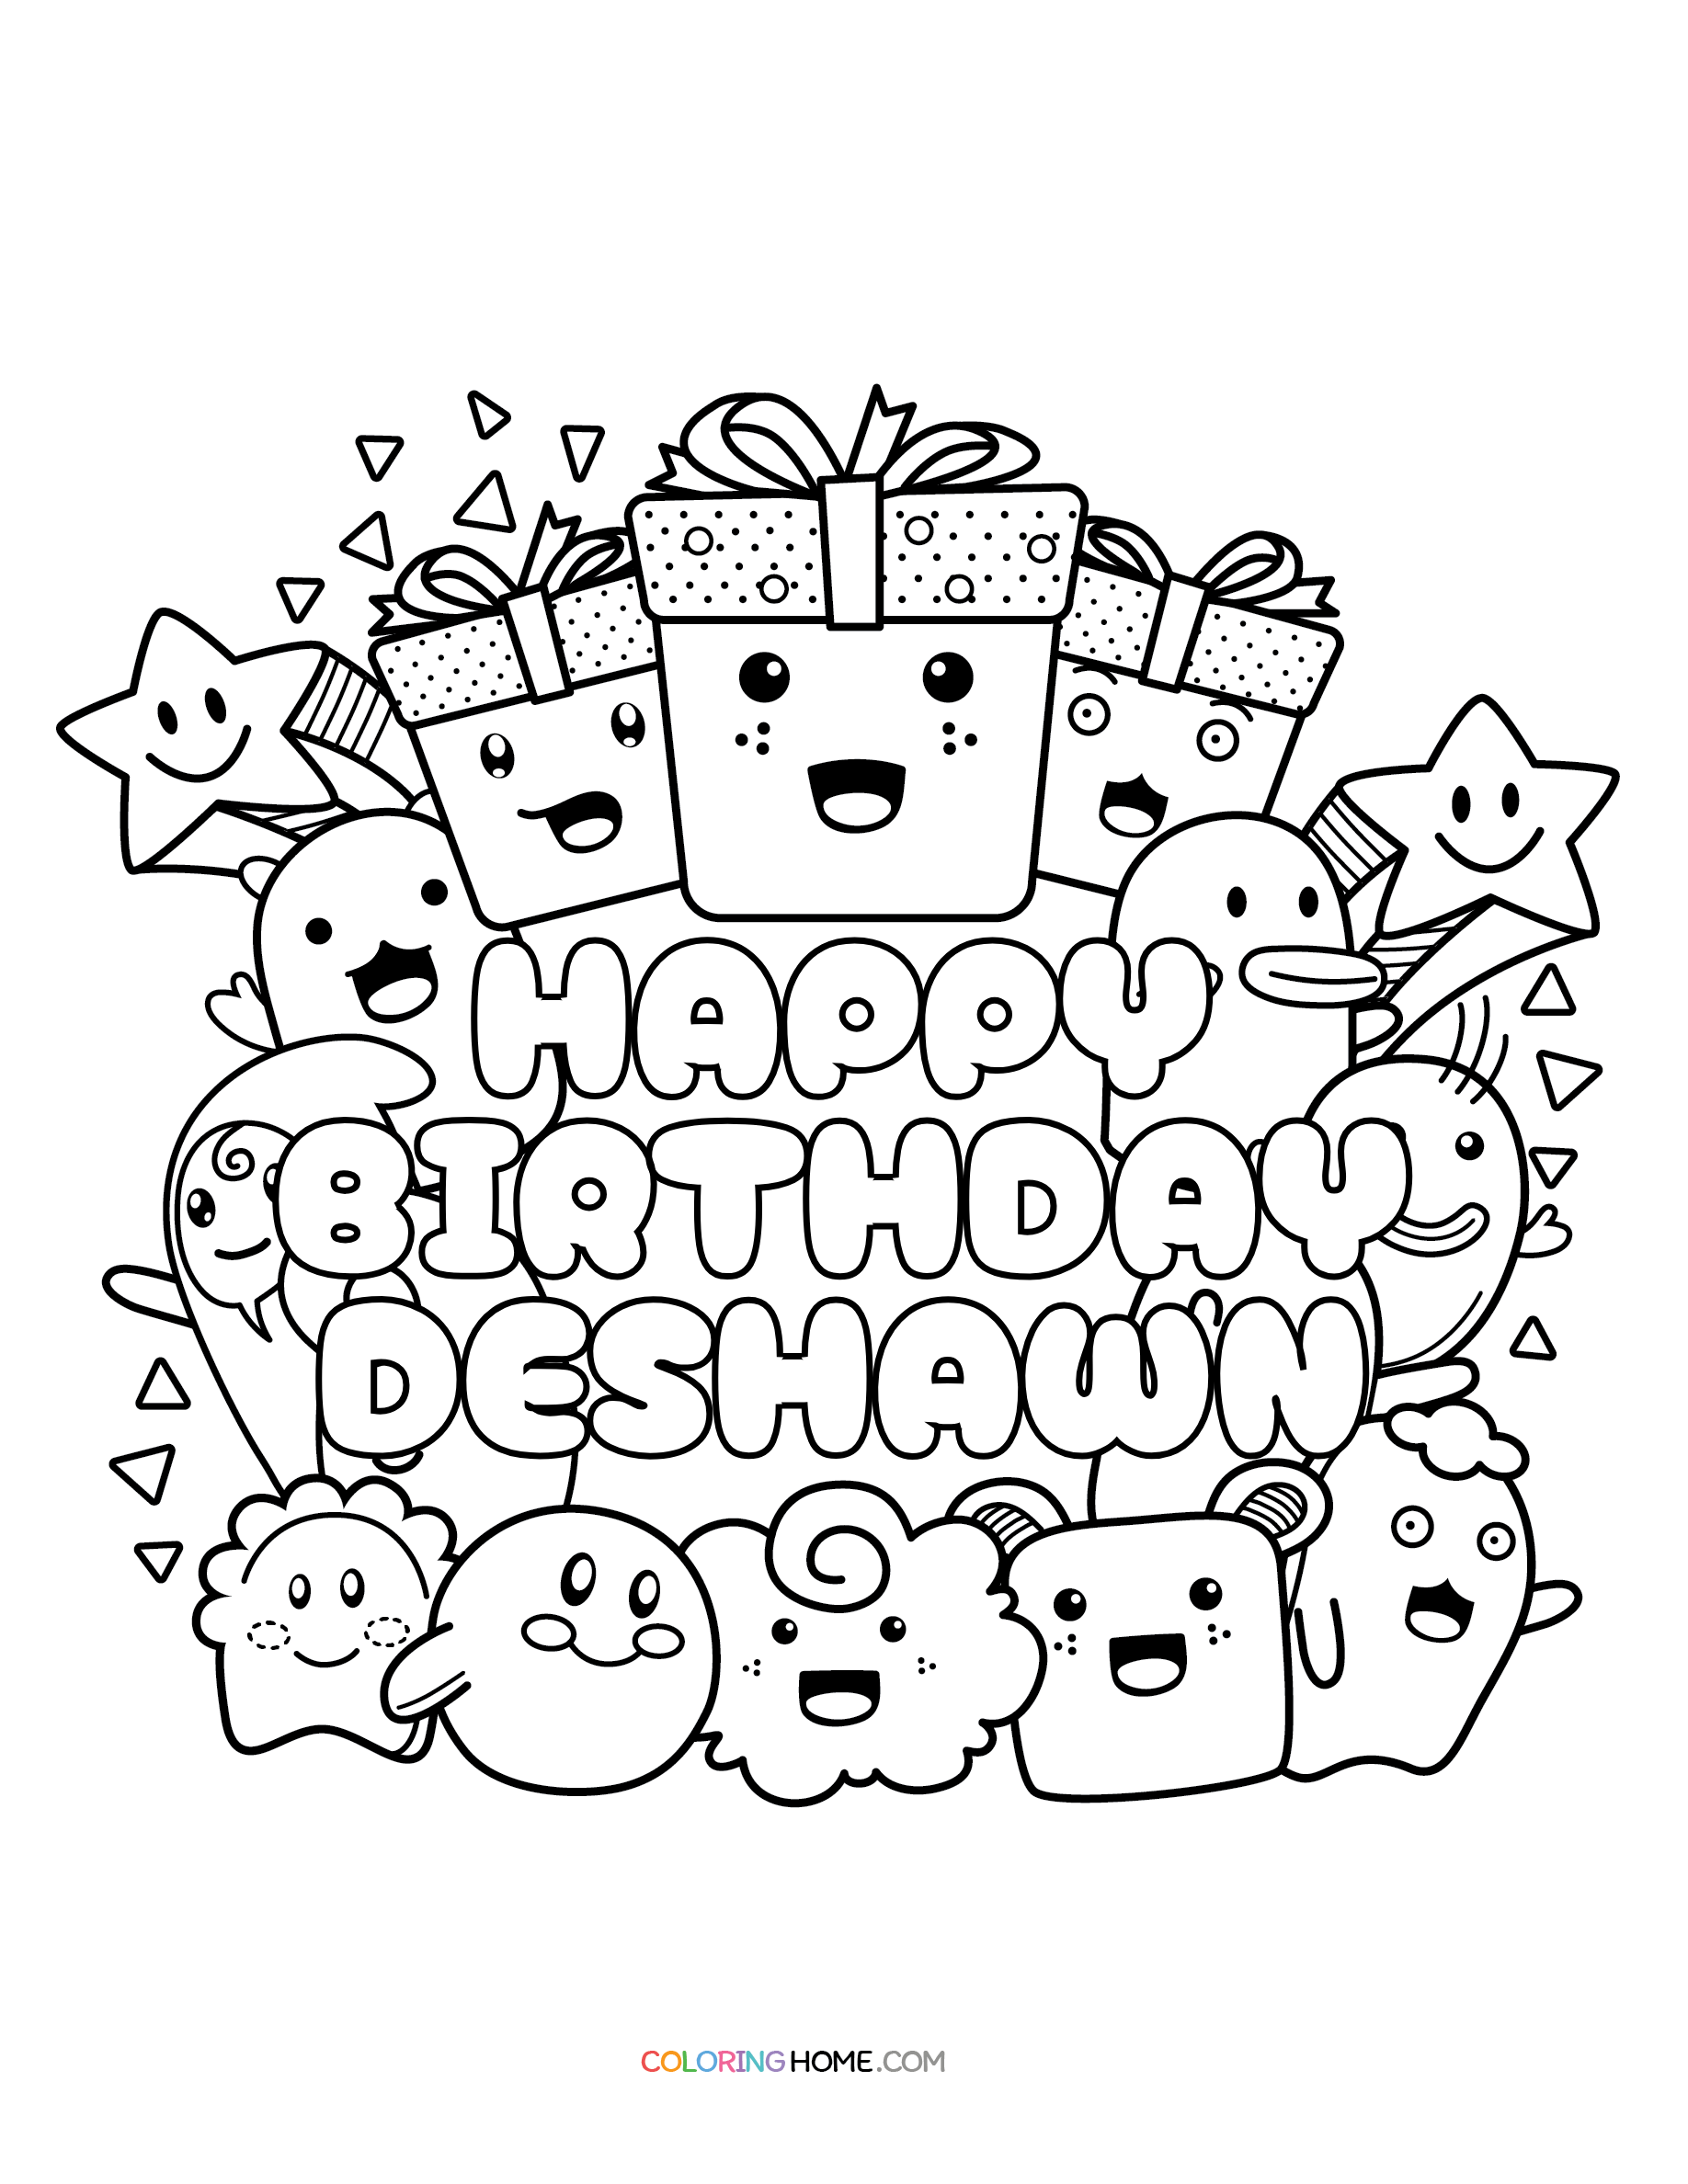 Happy Birthday Deshawn coloring page